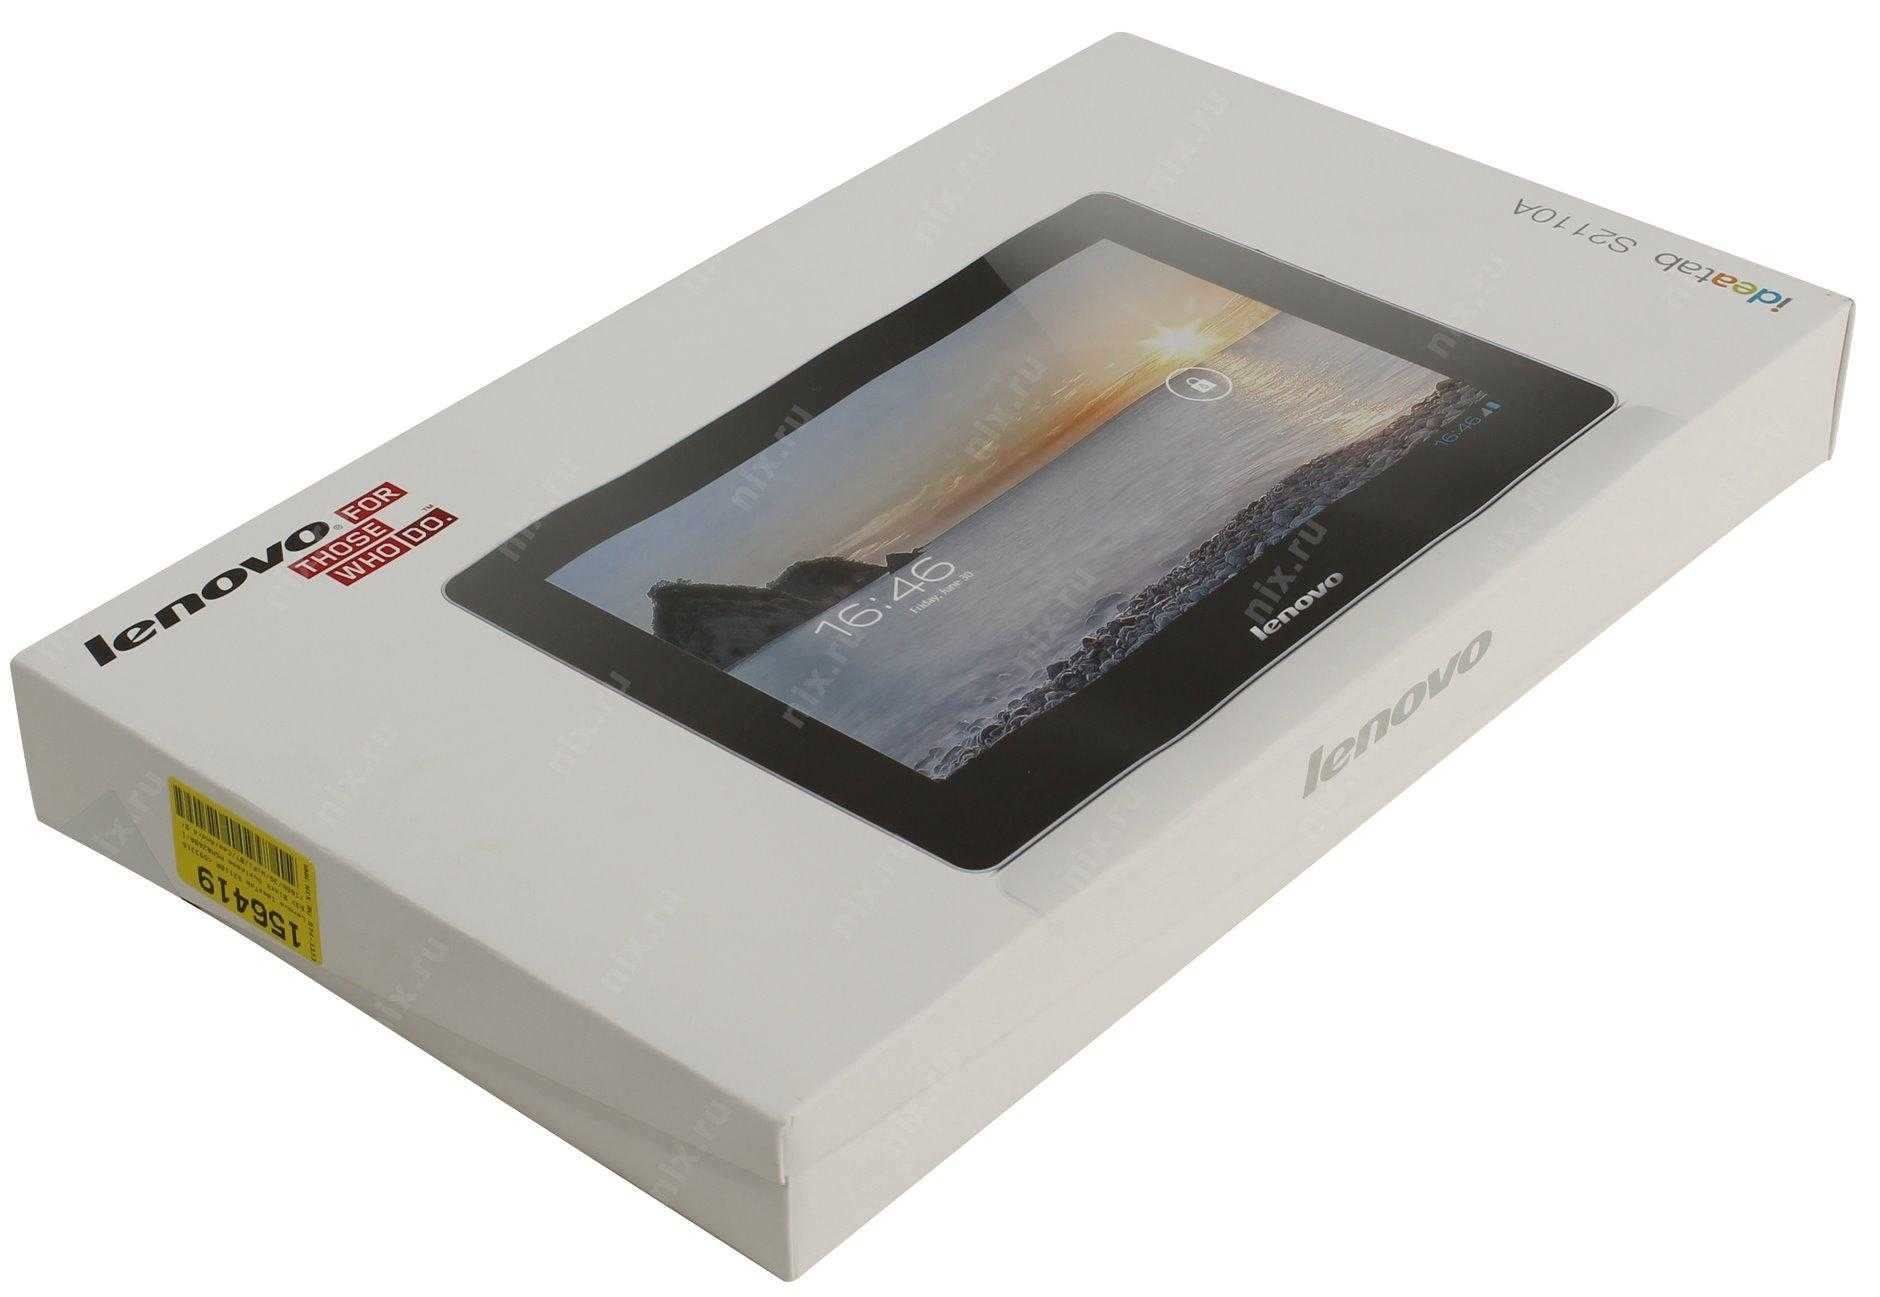 Lenovo ideatab s2110 32gb 3g - купить , скидки, цена, отзывы, обзор, характеристики - планшеты